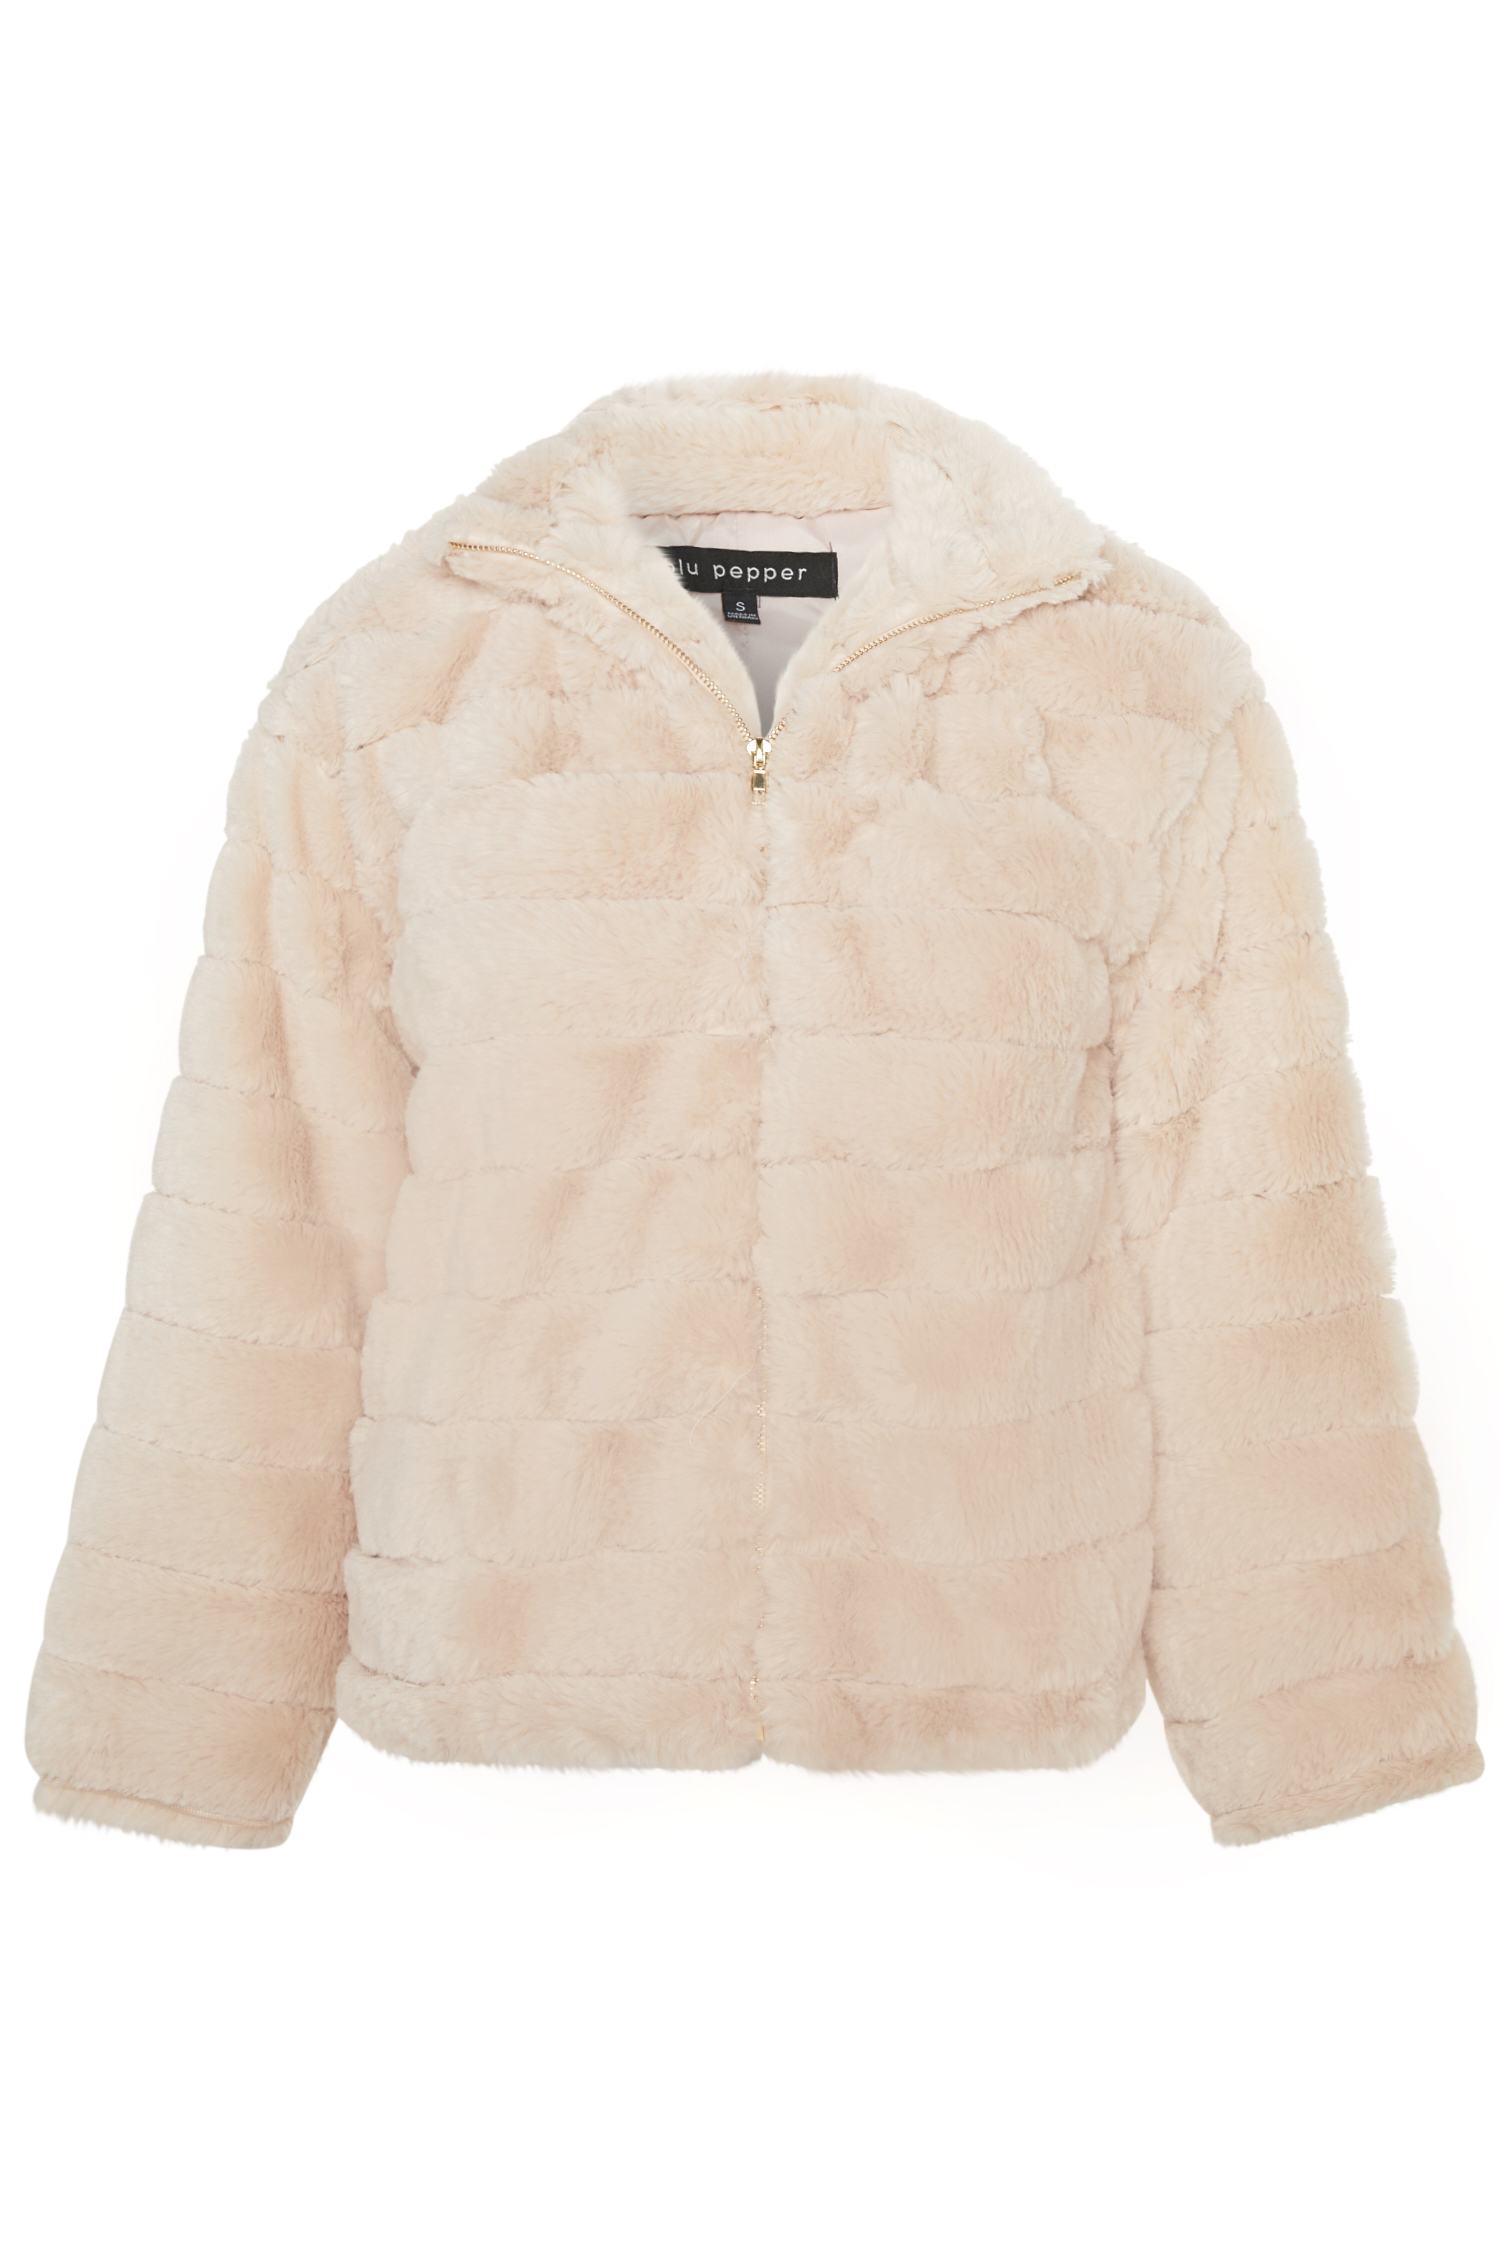 Long Sleeve Faux Fur Jacket in Beige XS - L | DAILYLOOK